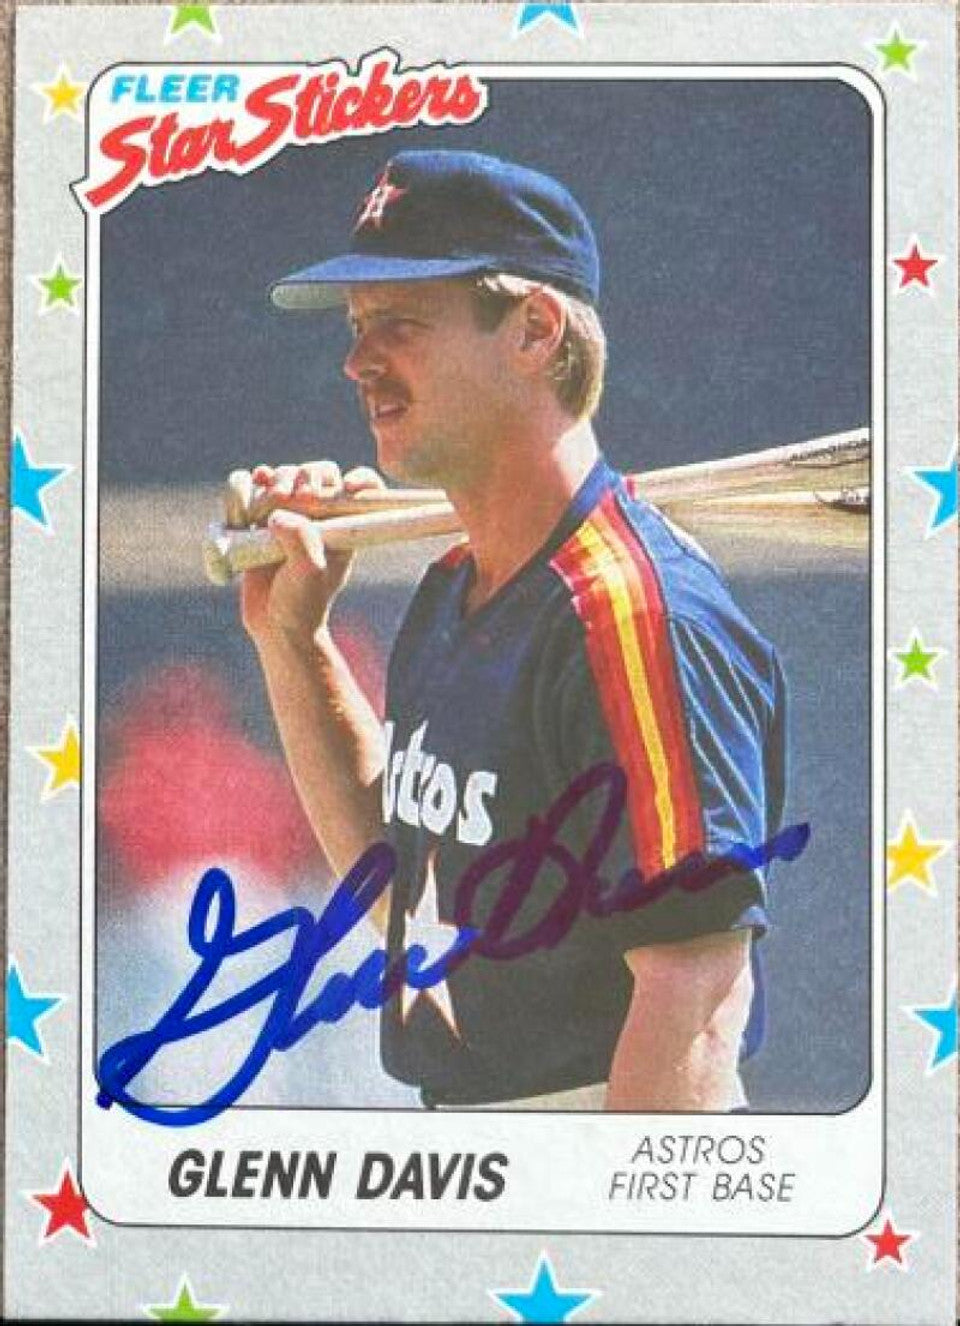 Glenn Davis Signed 1988 Fleer Star Stickers Baseball Card - Houston Astros